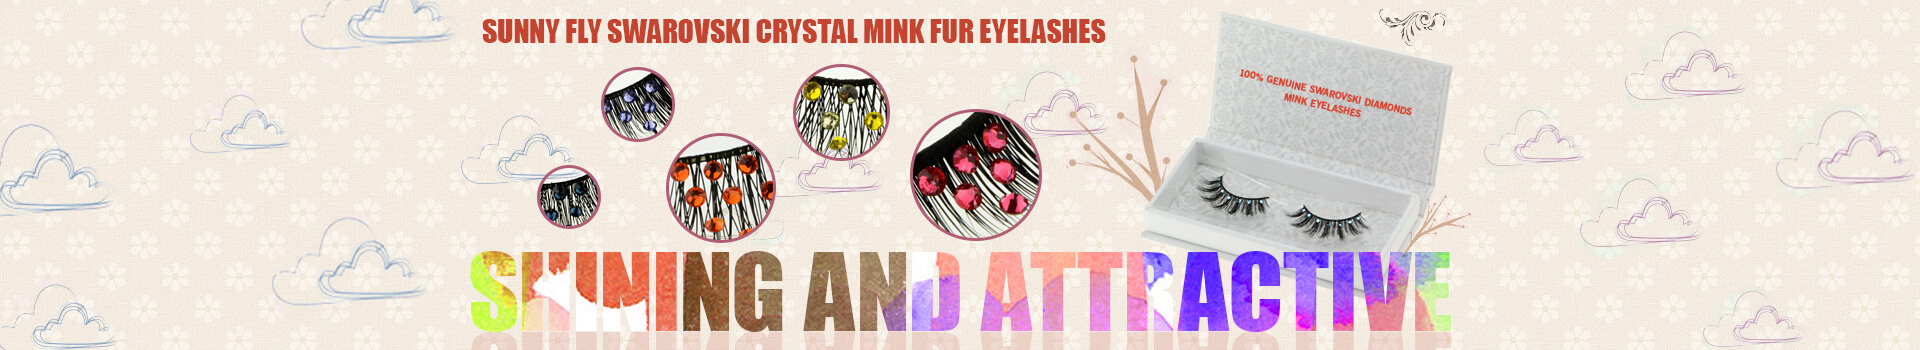 Swarovski Crystal Mink Fur Eyelashes MS30